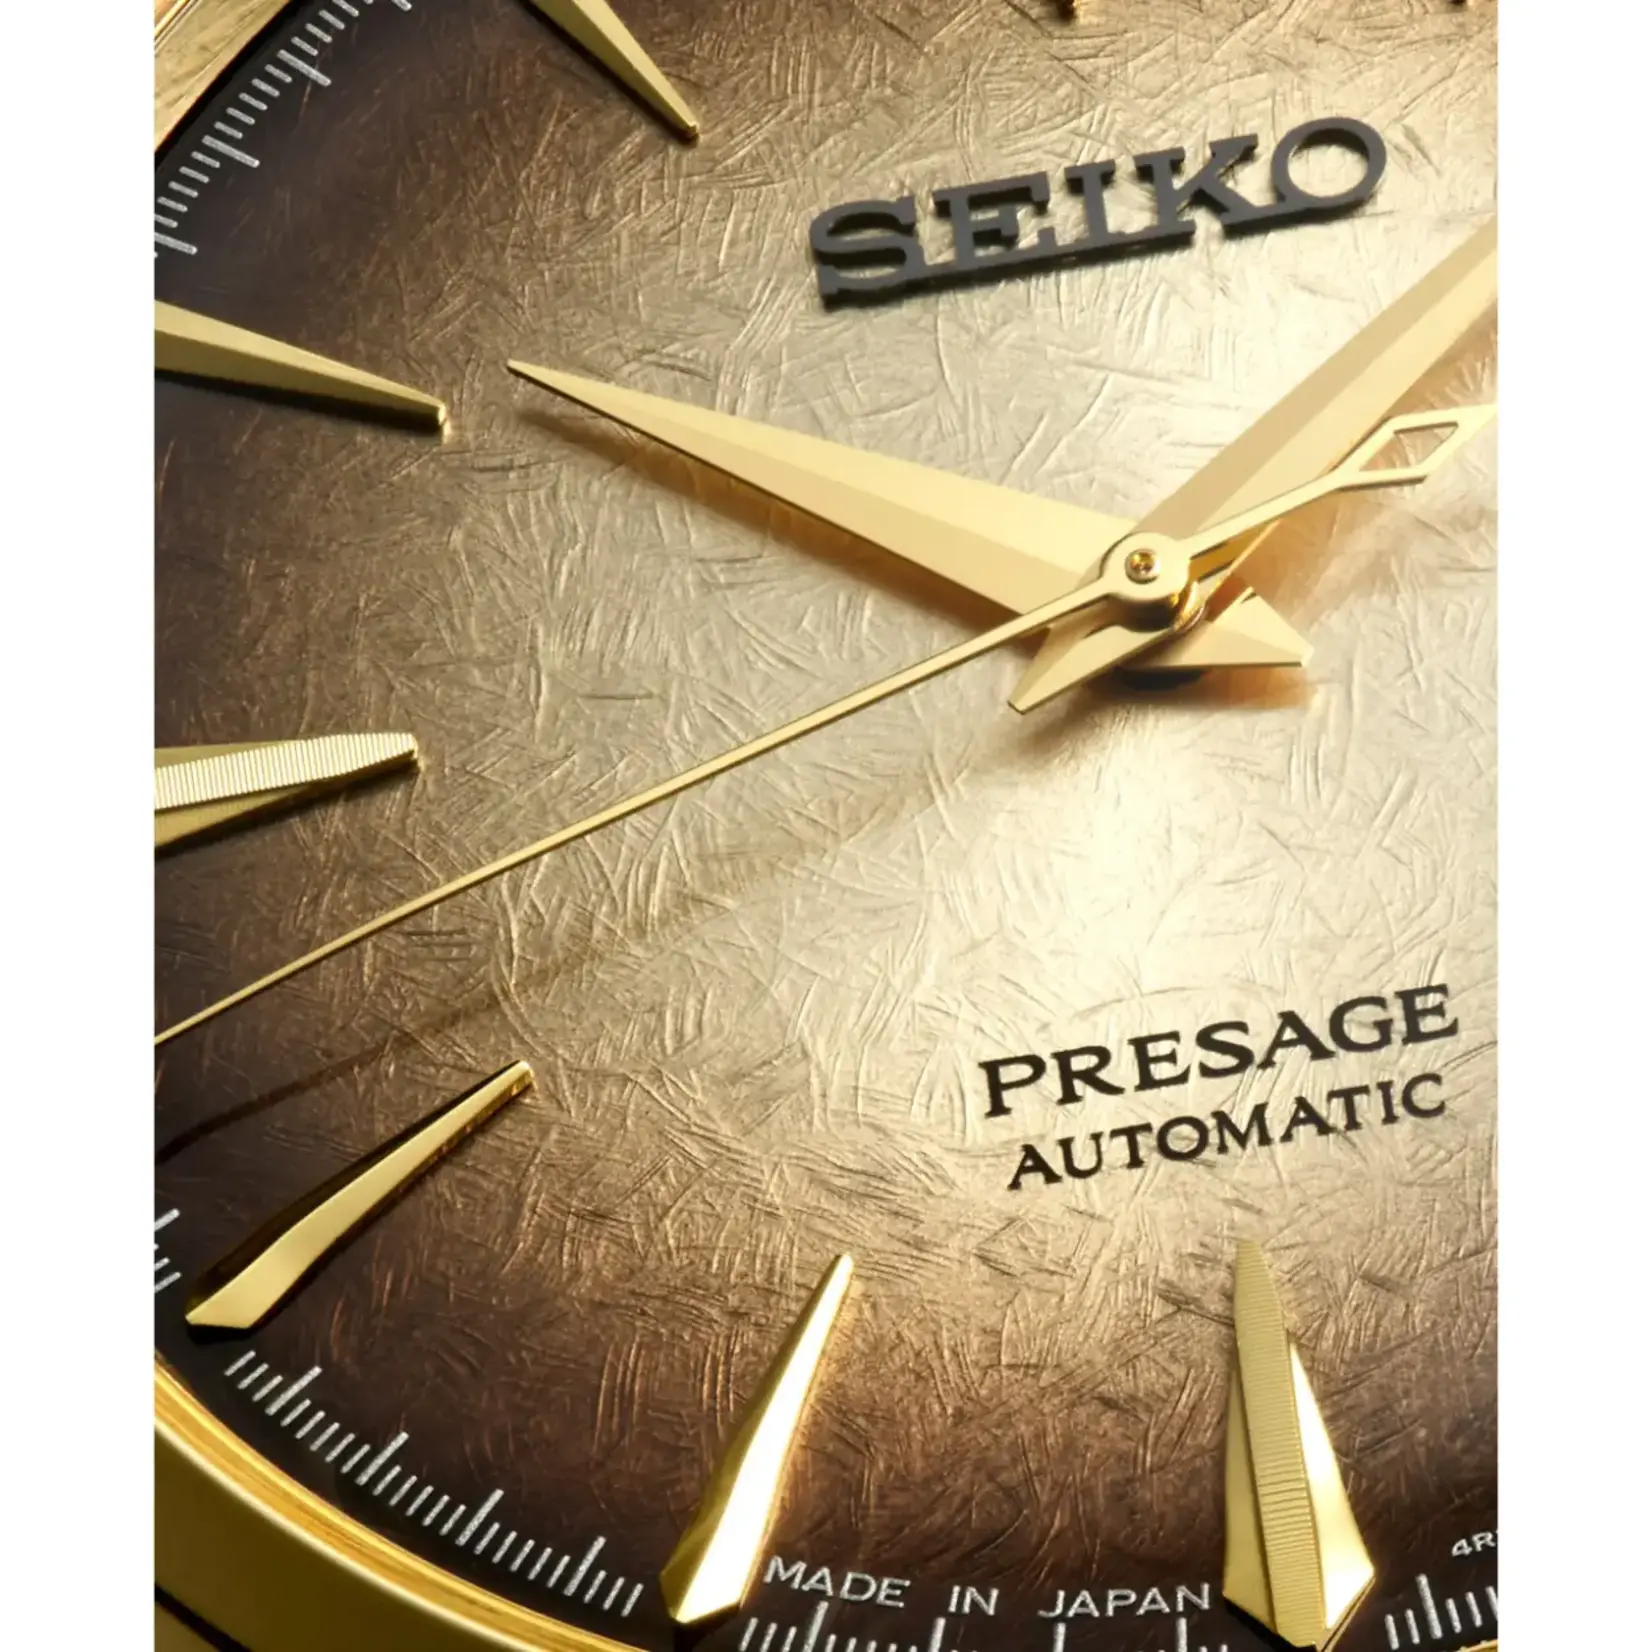 Seiko Seiko ‘Half and half’ Presage Cocktail Time SRPK48J1 European & US exclusive